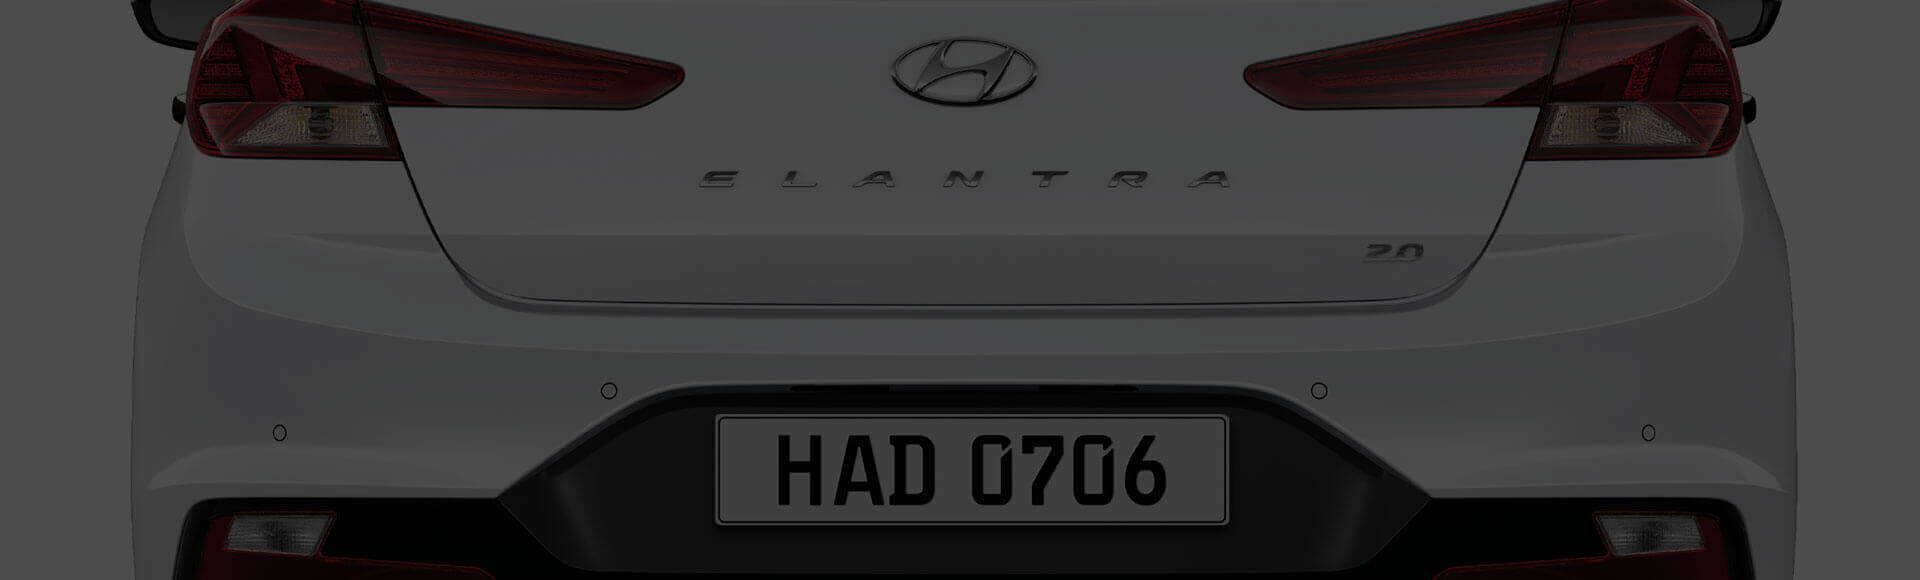 Mặt sau xe Hyundai Elantra 2019 màu trắng